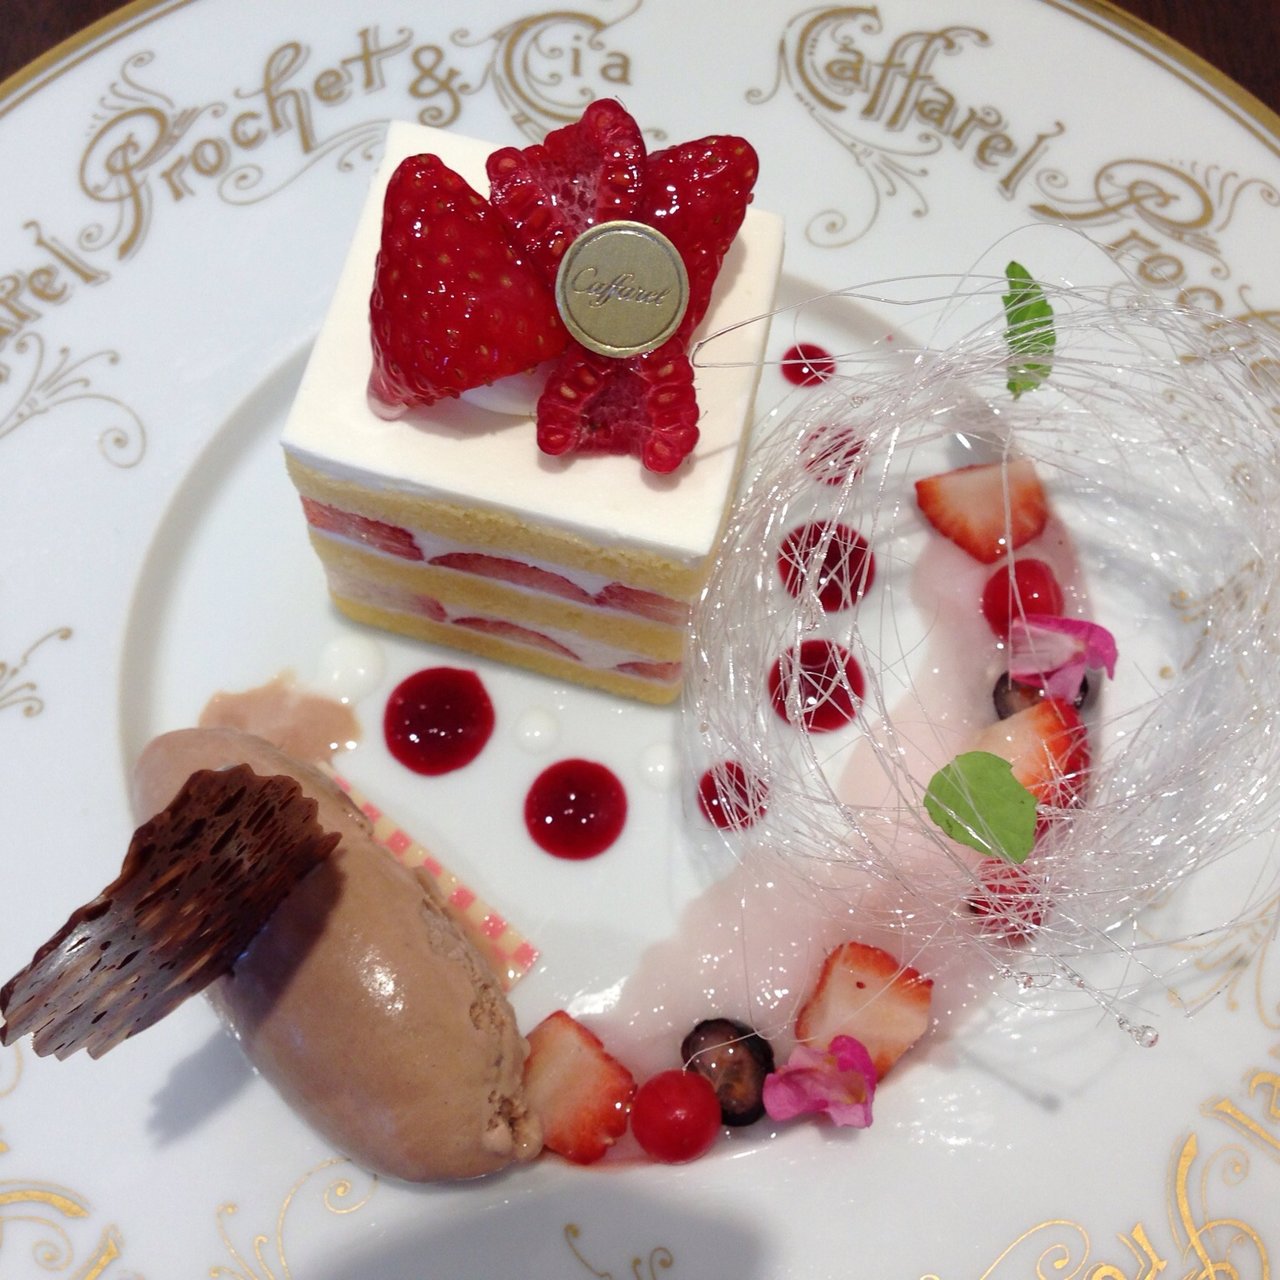 ショートケーキ 皿盛り カファレル 神戸北野本店 Caffarel Cioccolate の口コミ一覧 おいしい一皿 が集まるグルメコミュニティサービス Sarah